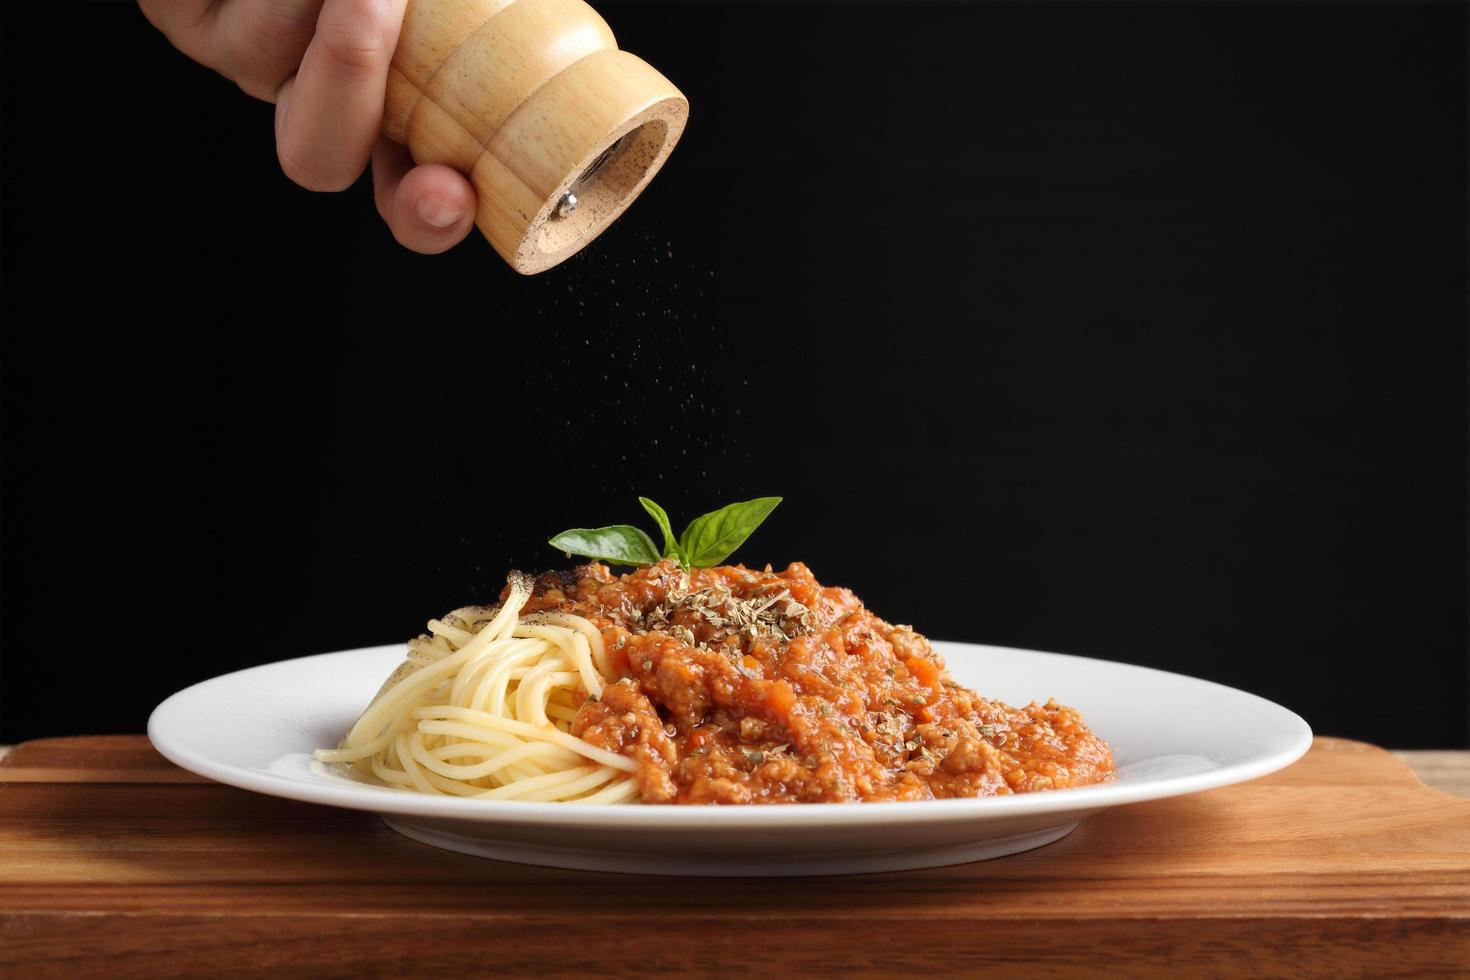 Mano sujetando el molinillo de pimienta con espaguetis y salsa roja en un plato blanco foto